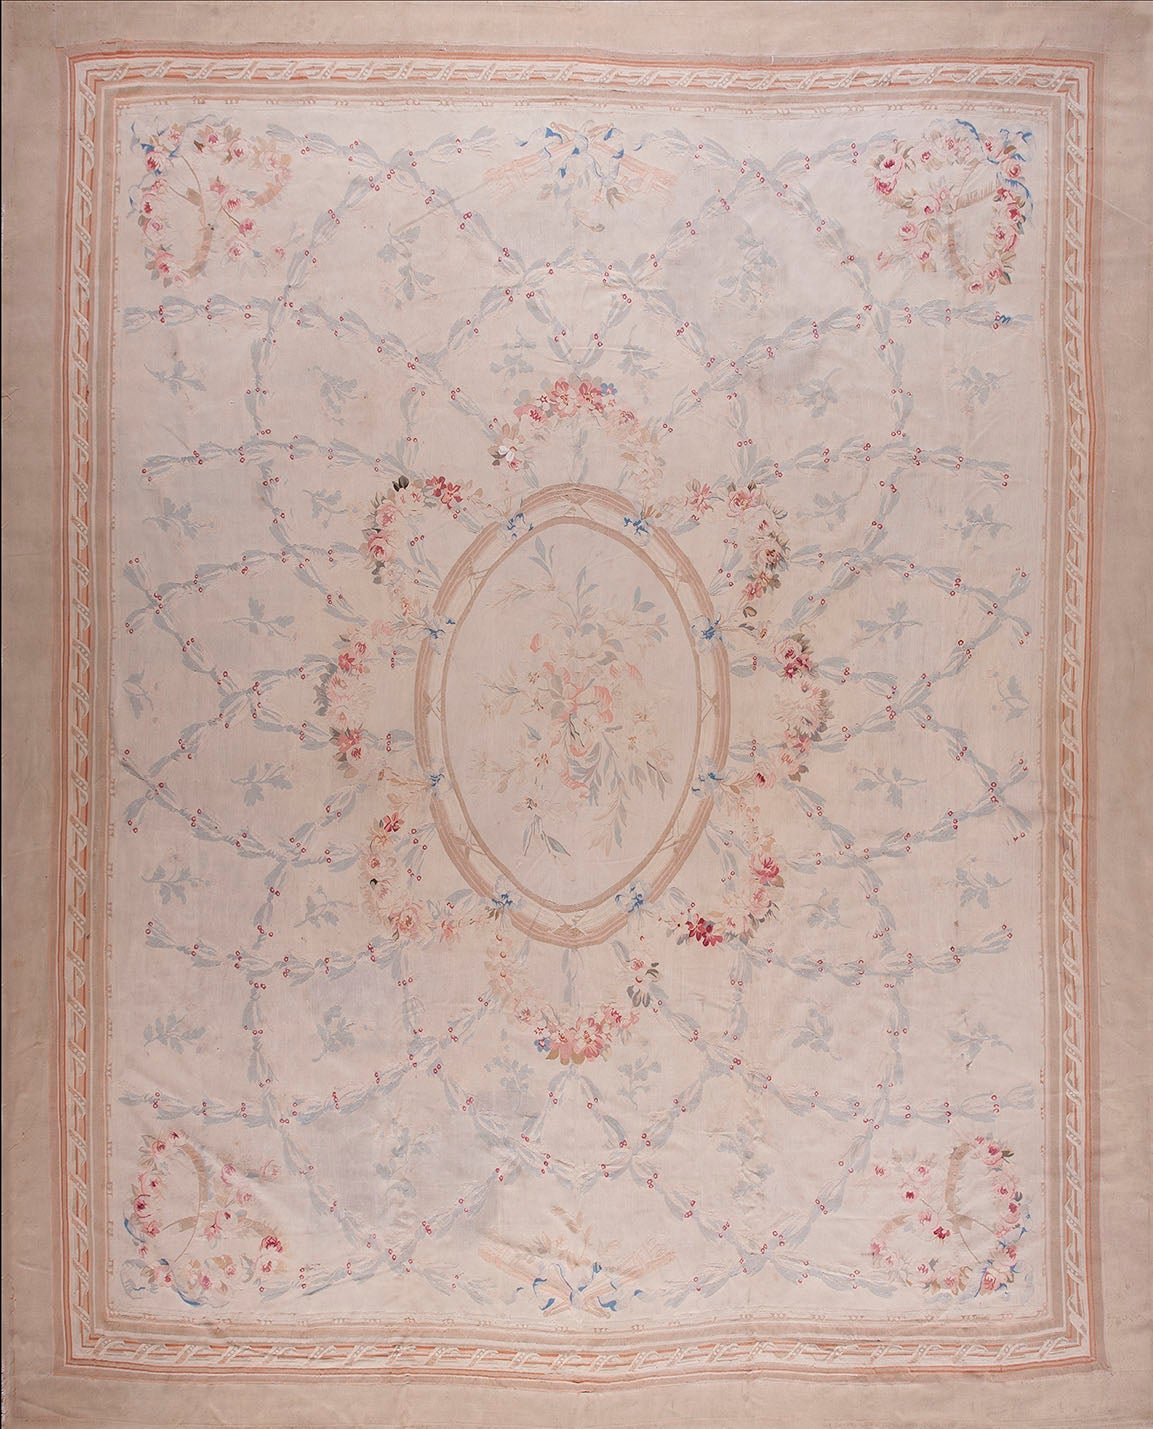 Tapis d'Aubusson français de la fin du XIXe siècle ( 11'8"" x 14'3"" - 355 x 434 cm)  